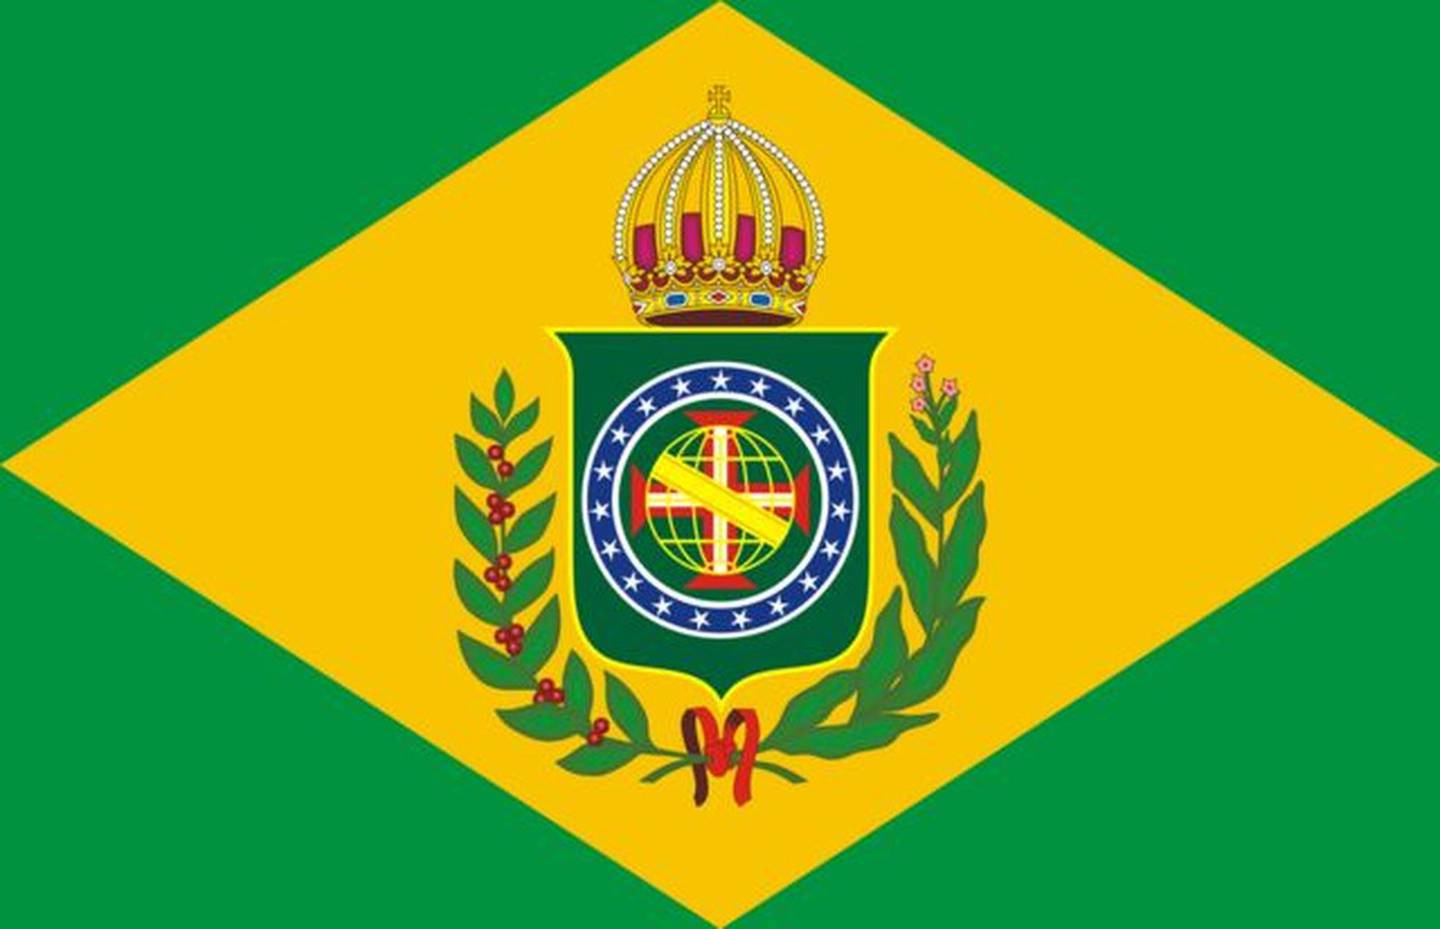 Bandeira do Império, que serviu de inspiração para atual símbolo nacional